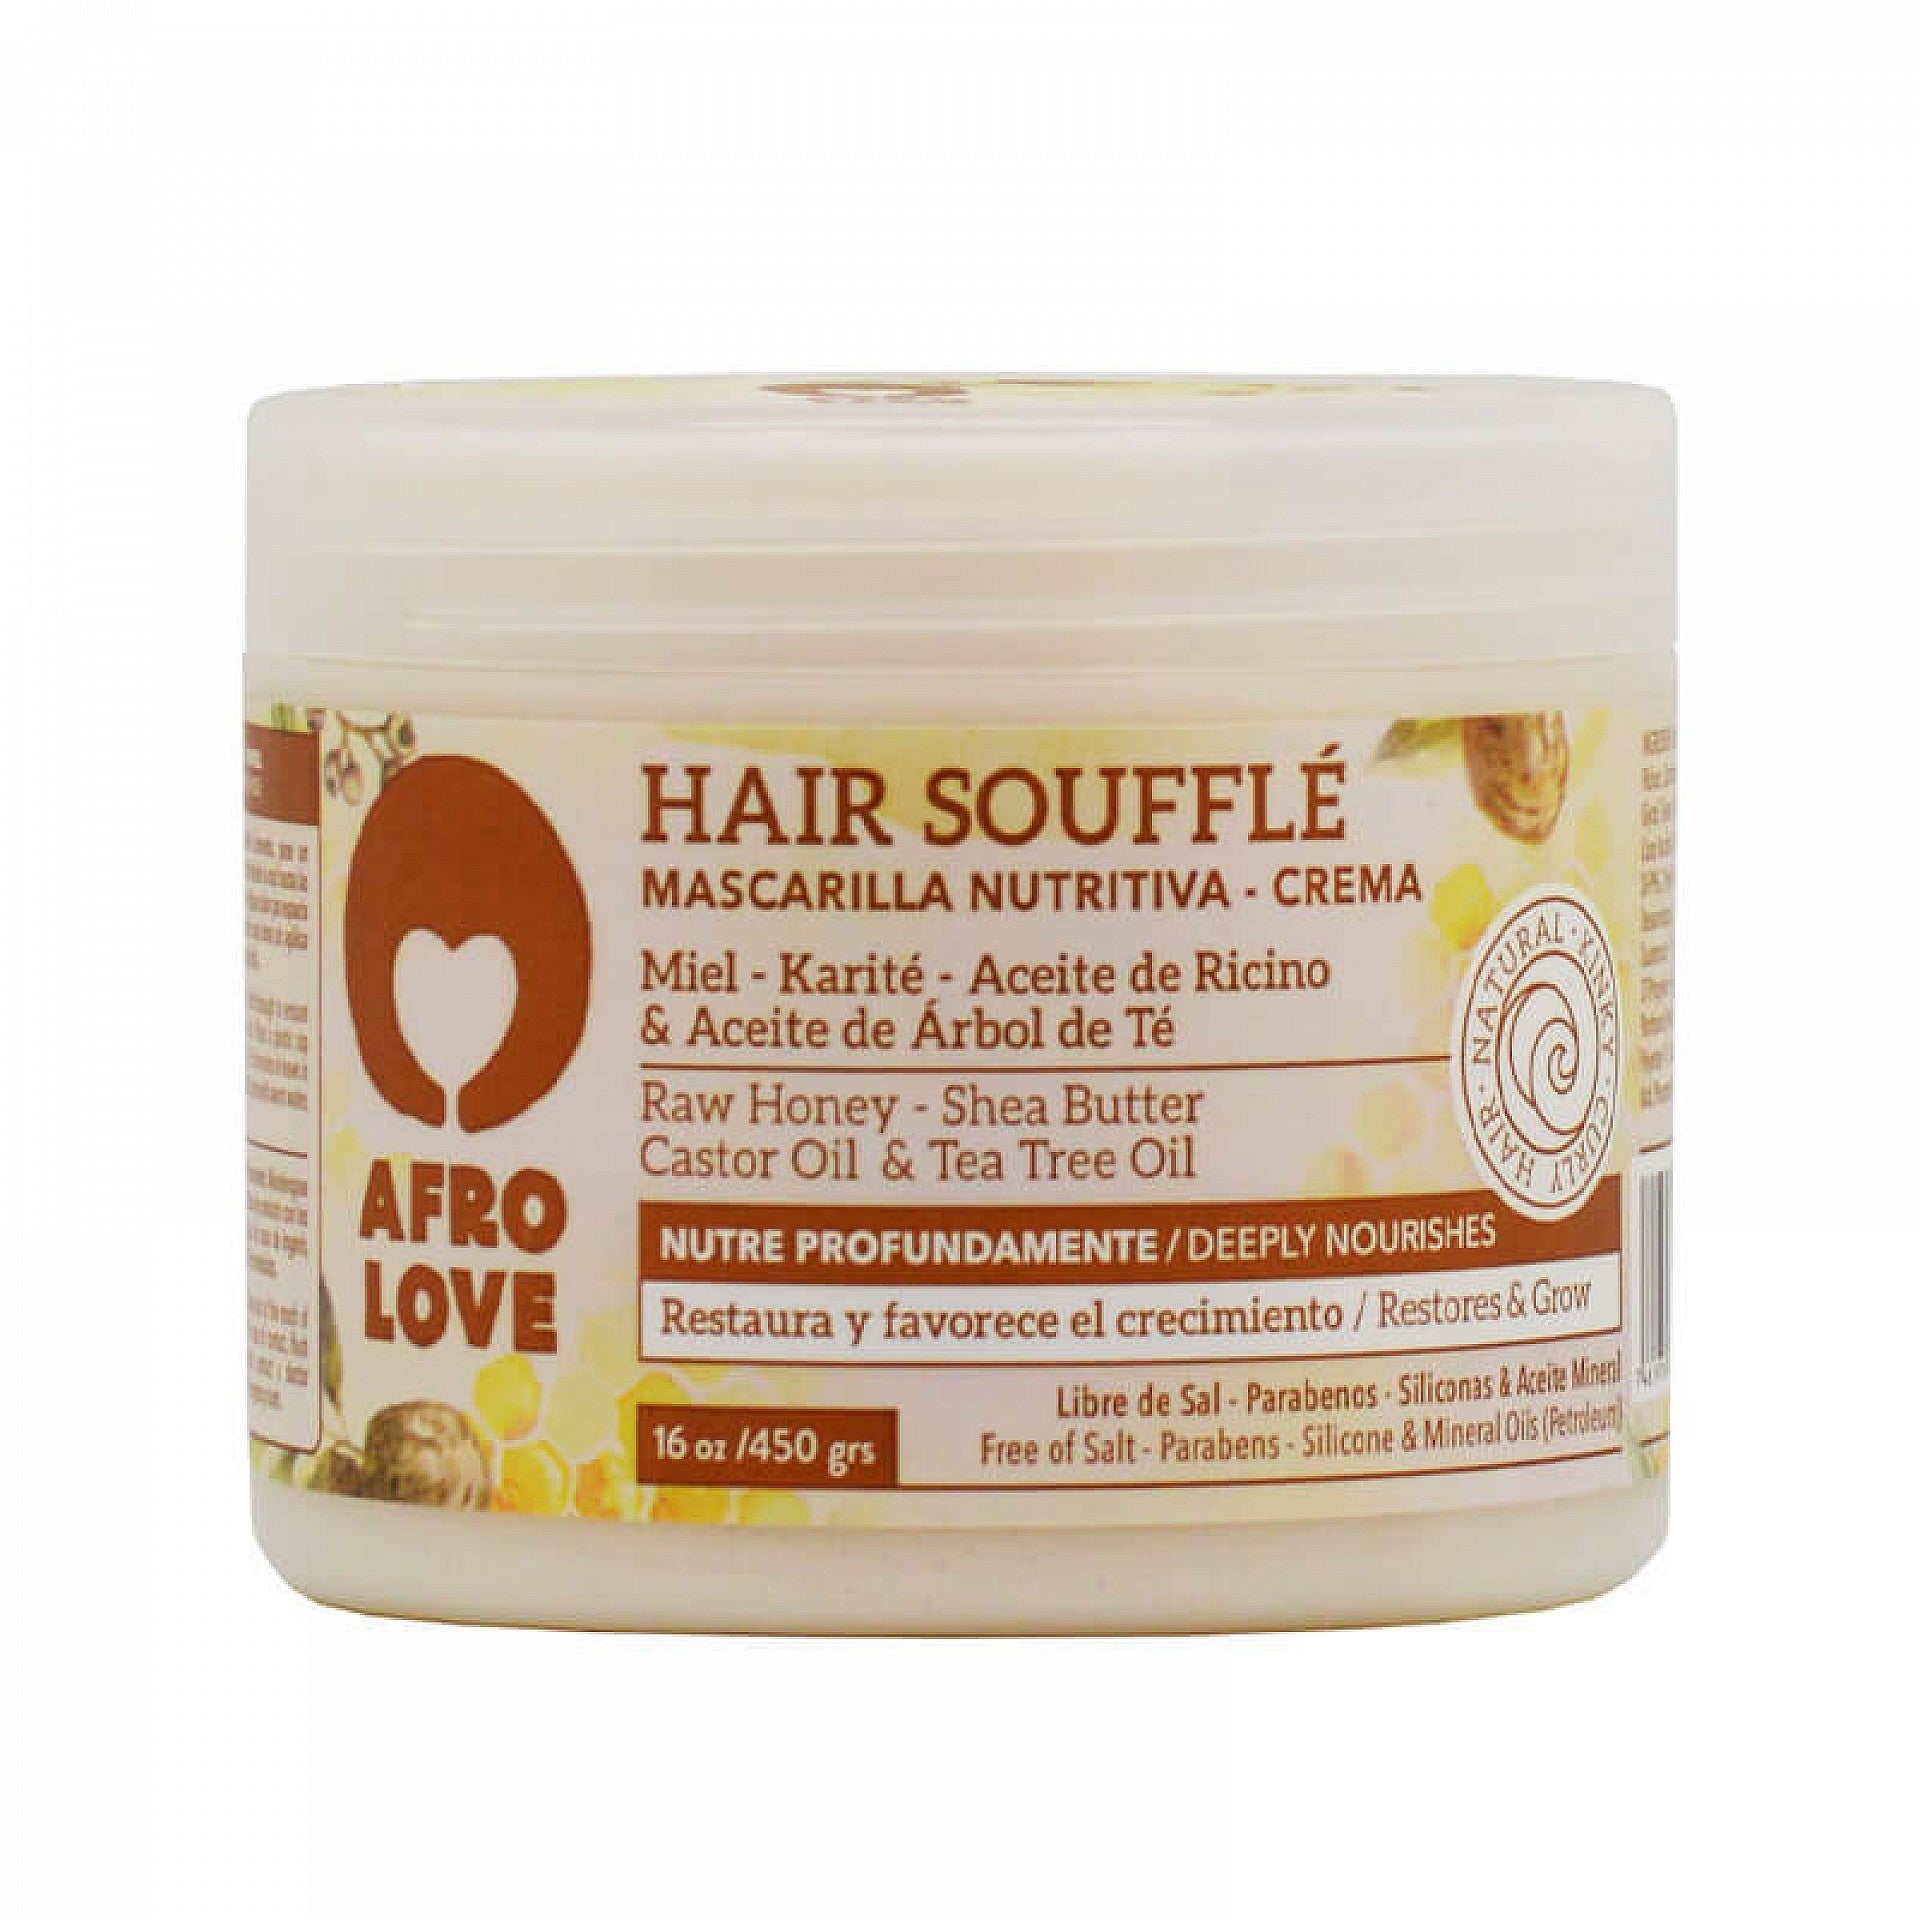 Afro älskar hår soufflé mask 16oz